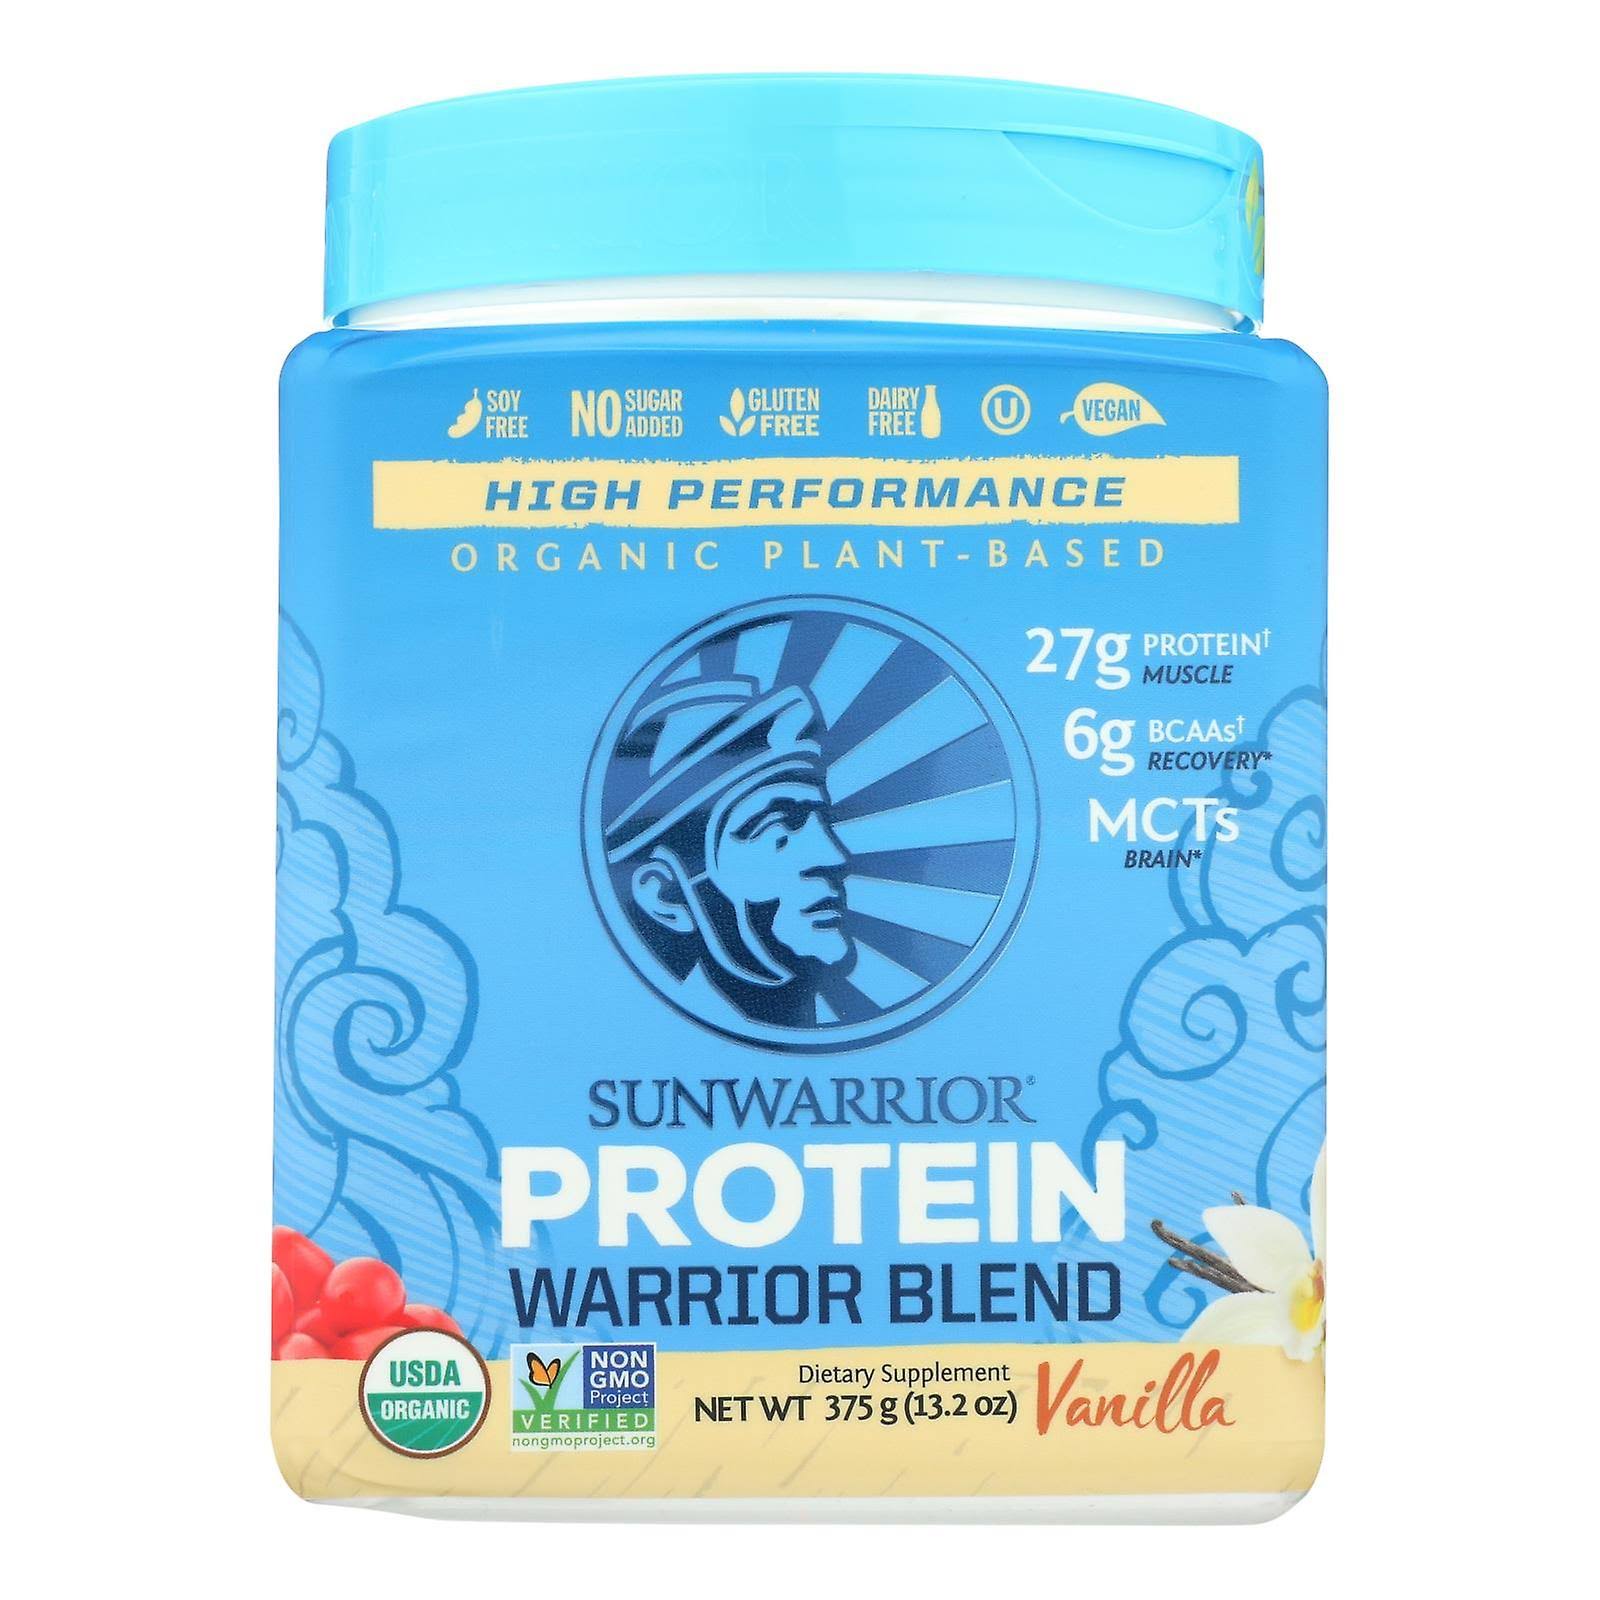 Warrior Blend Protein Sunwarrior Vanilla 375g